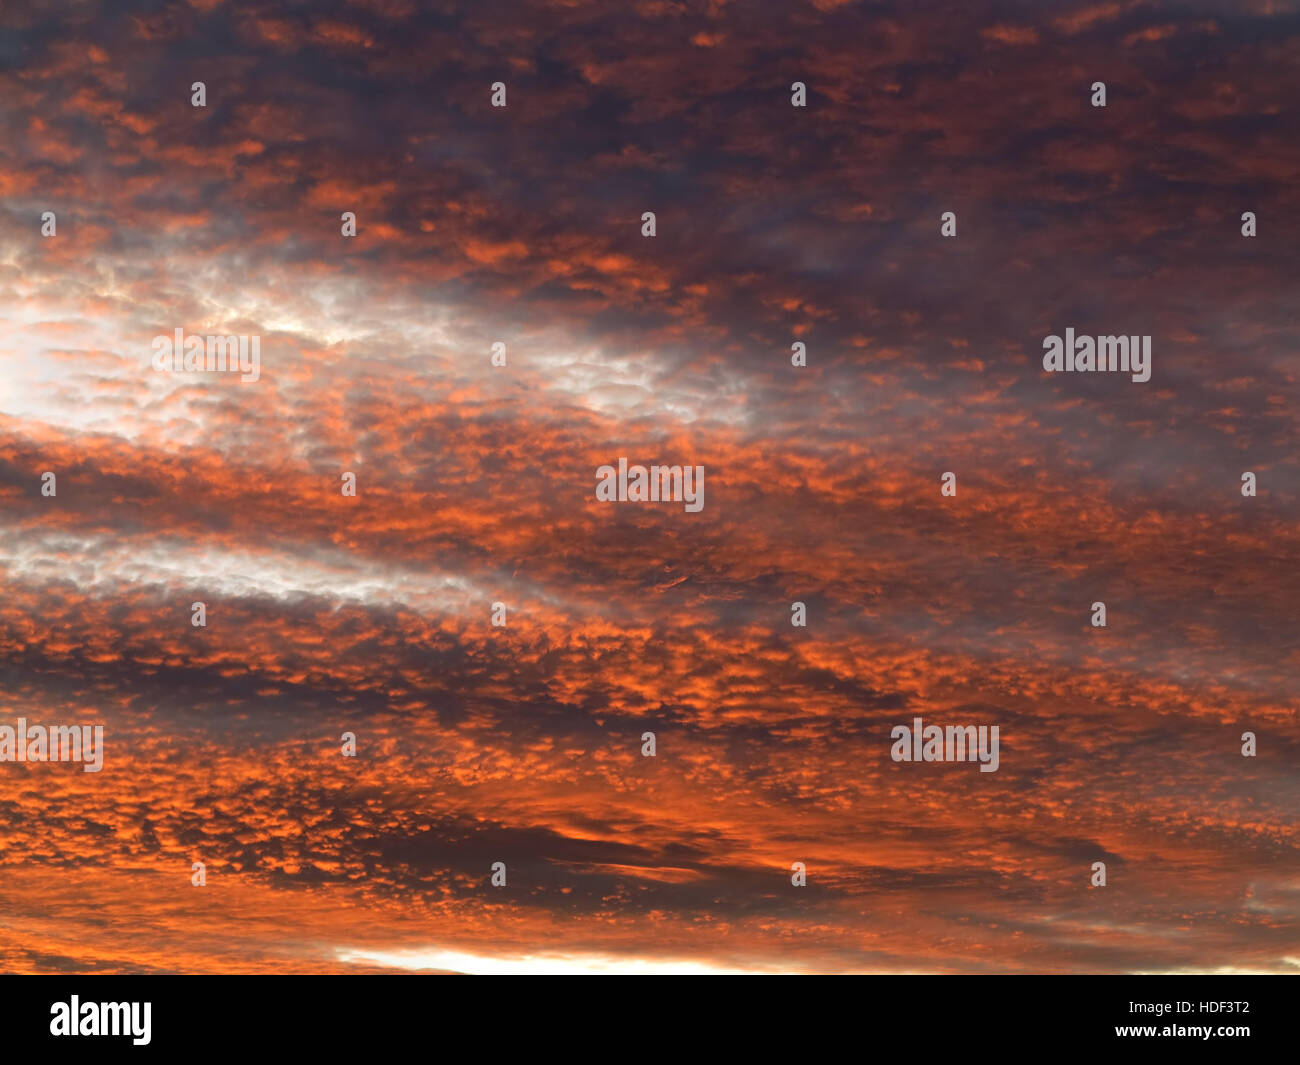 Roter Himmel in der Abenddämmerung - Bild der rosa Himmel - Zwielicht - Sonnenuntergang Farben Stockfoto